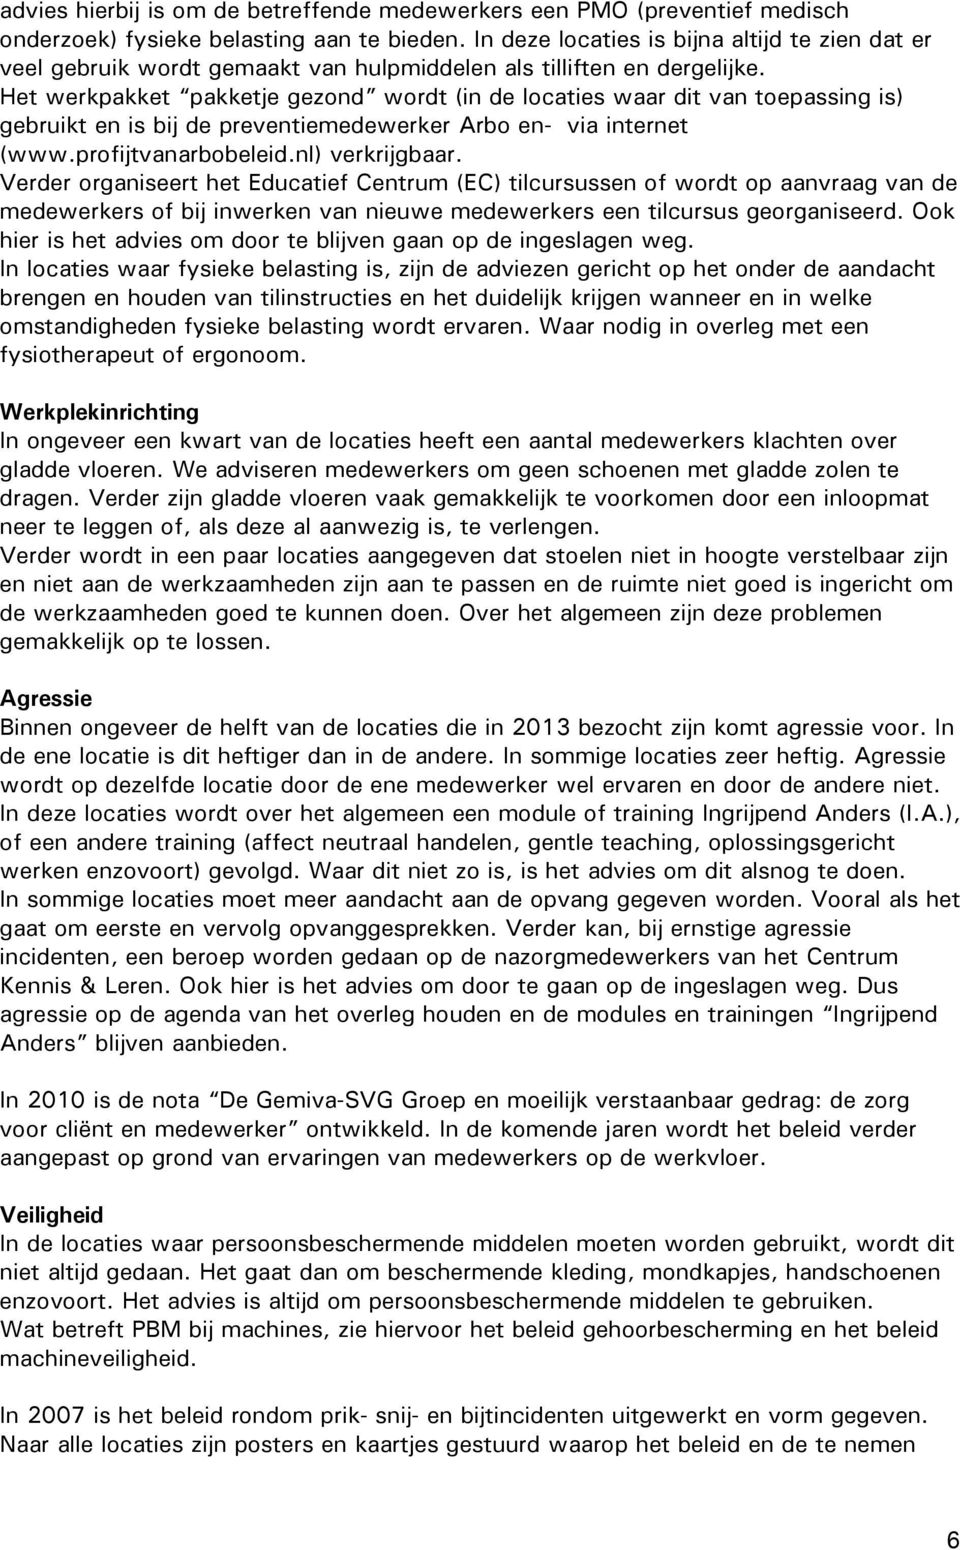 Het werkpakket pakketje gezond wordt (in de locaties waar dit van toepassing is) gebruikt en is bij de preventiemedewerker Arbo en- via internet (www.profijtvanarbobeleid.nl) verkrijgbaar.